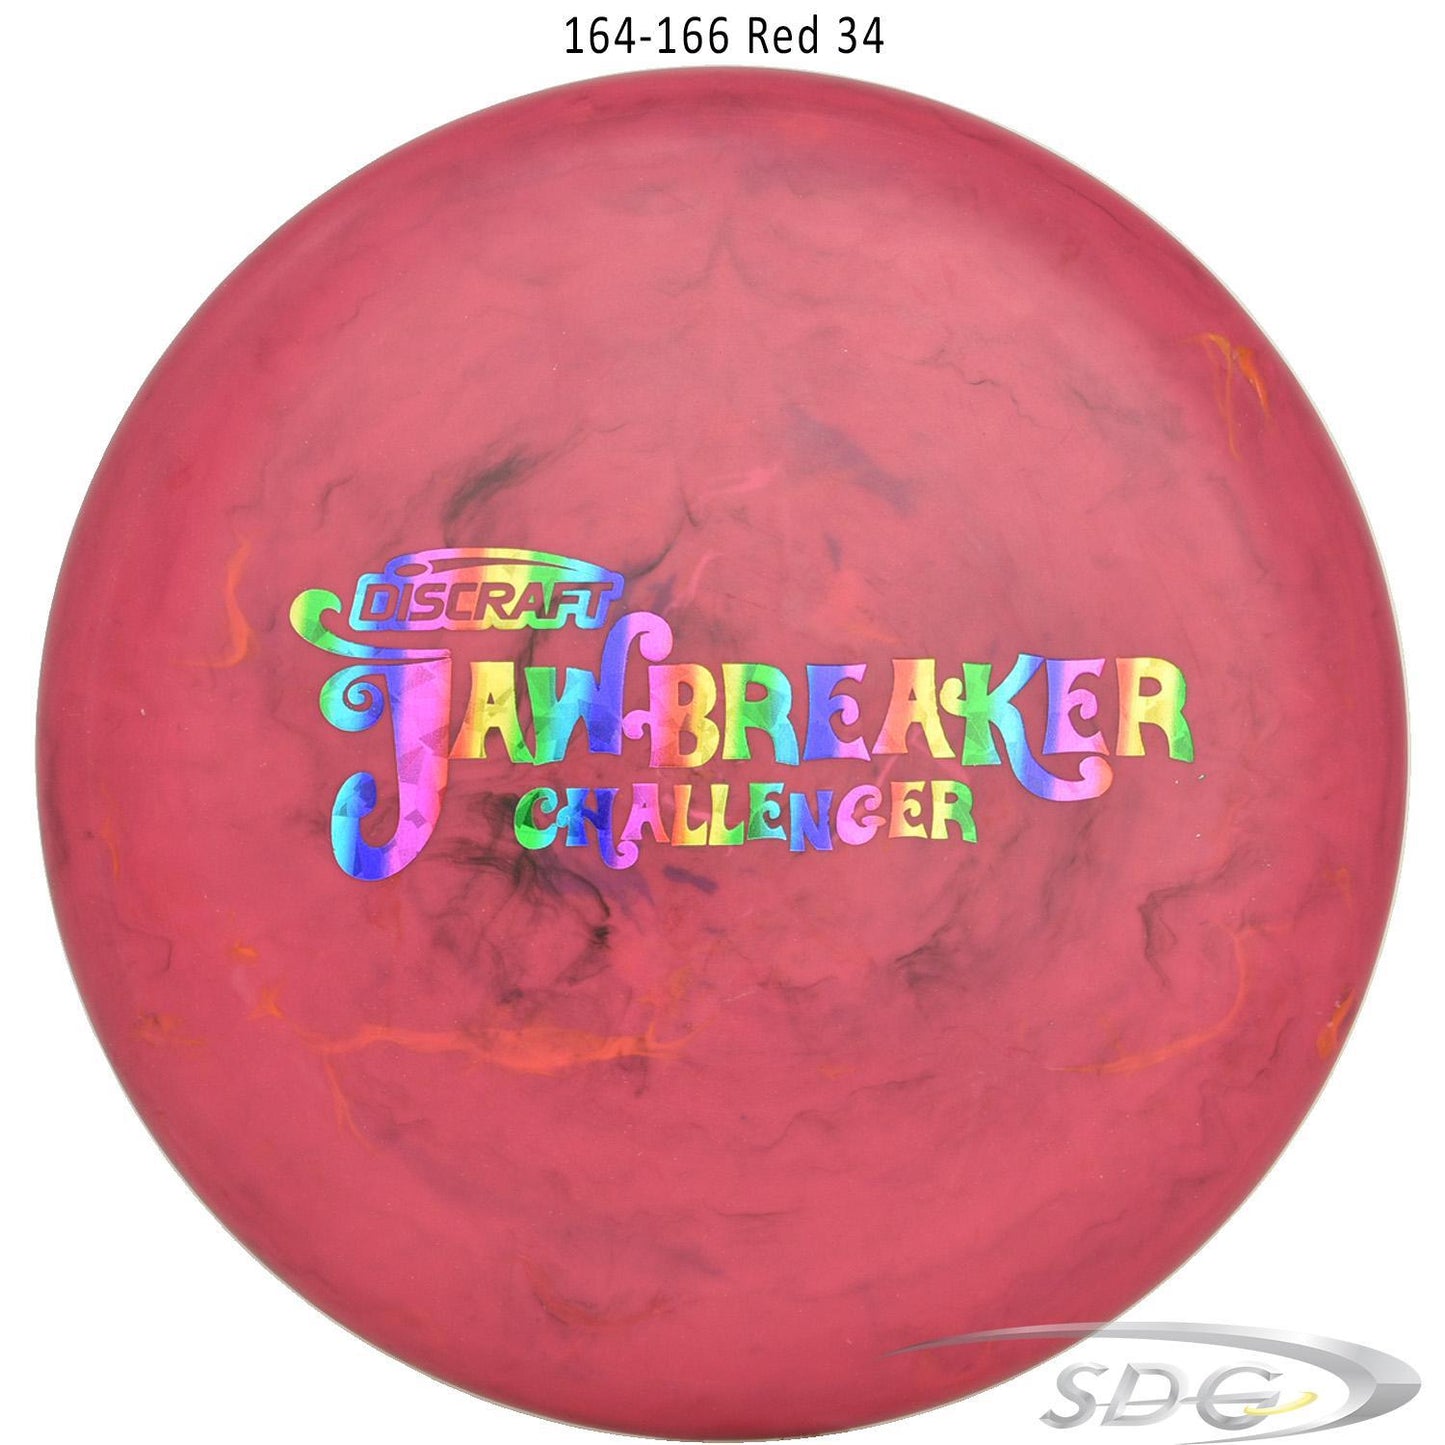 discraft-jawbreaker-challenger-disc-golf-putter 164-166 Red 34 